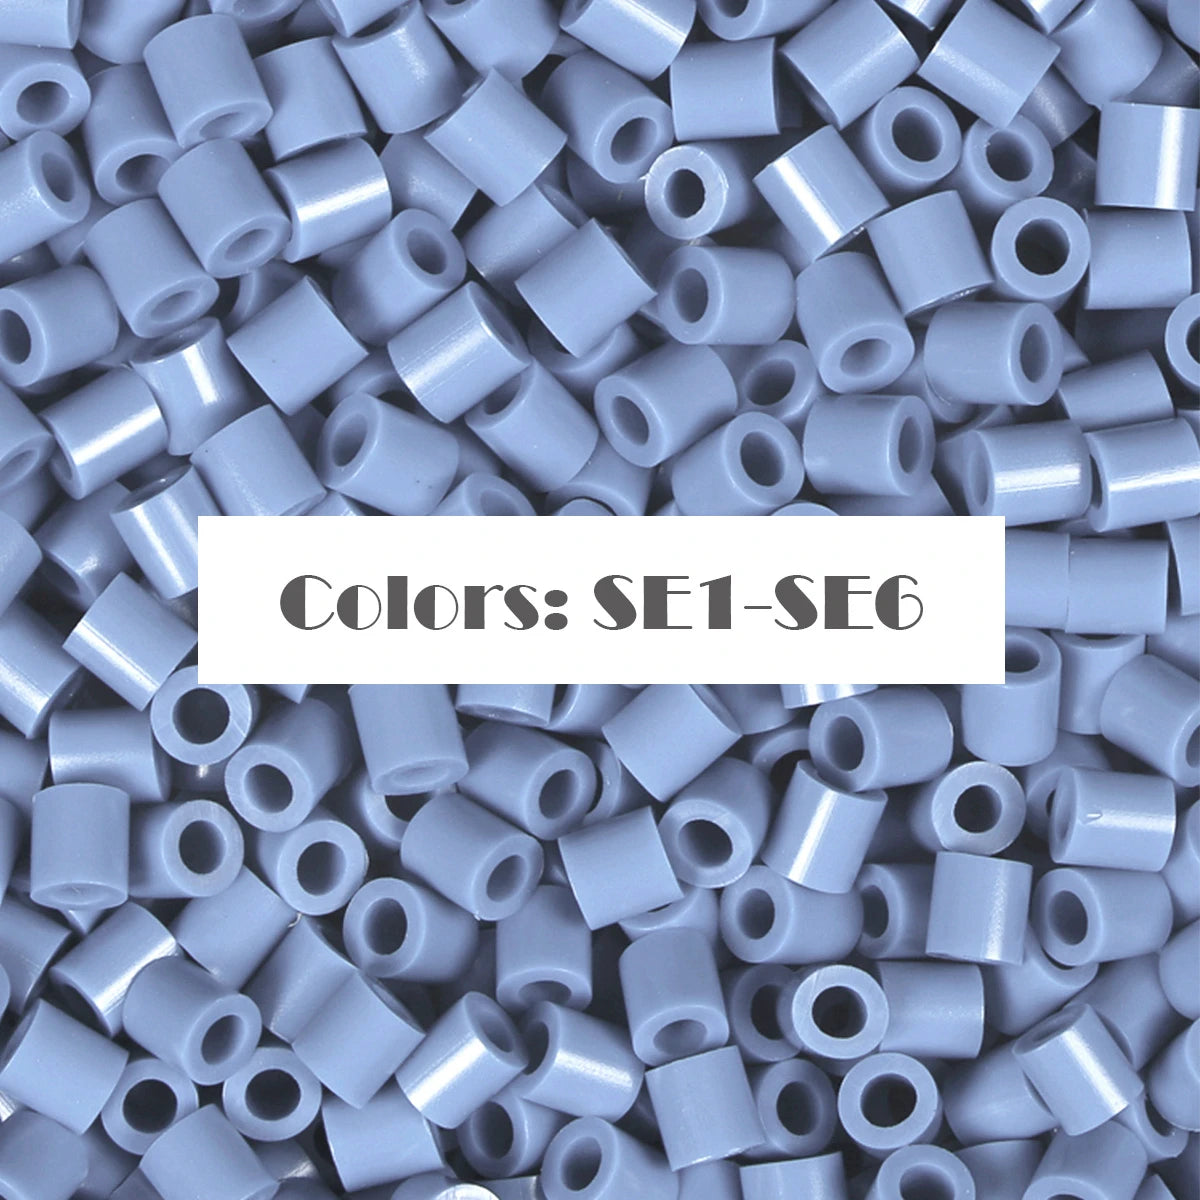 (SE1-SE6) New Color Series Blue S-1KG in Bulk